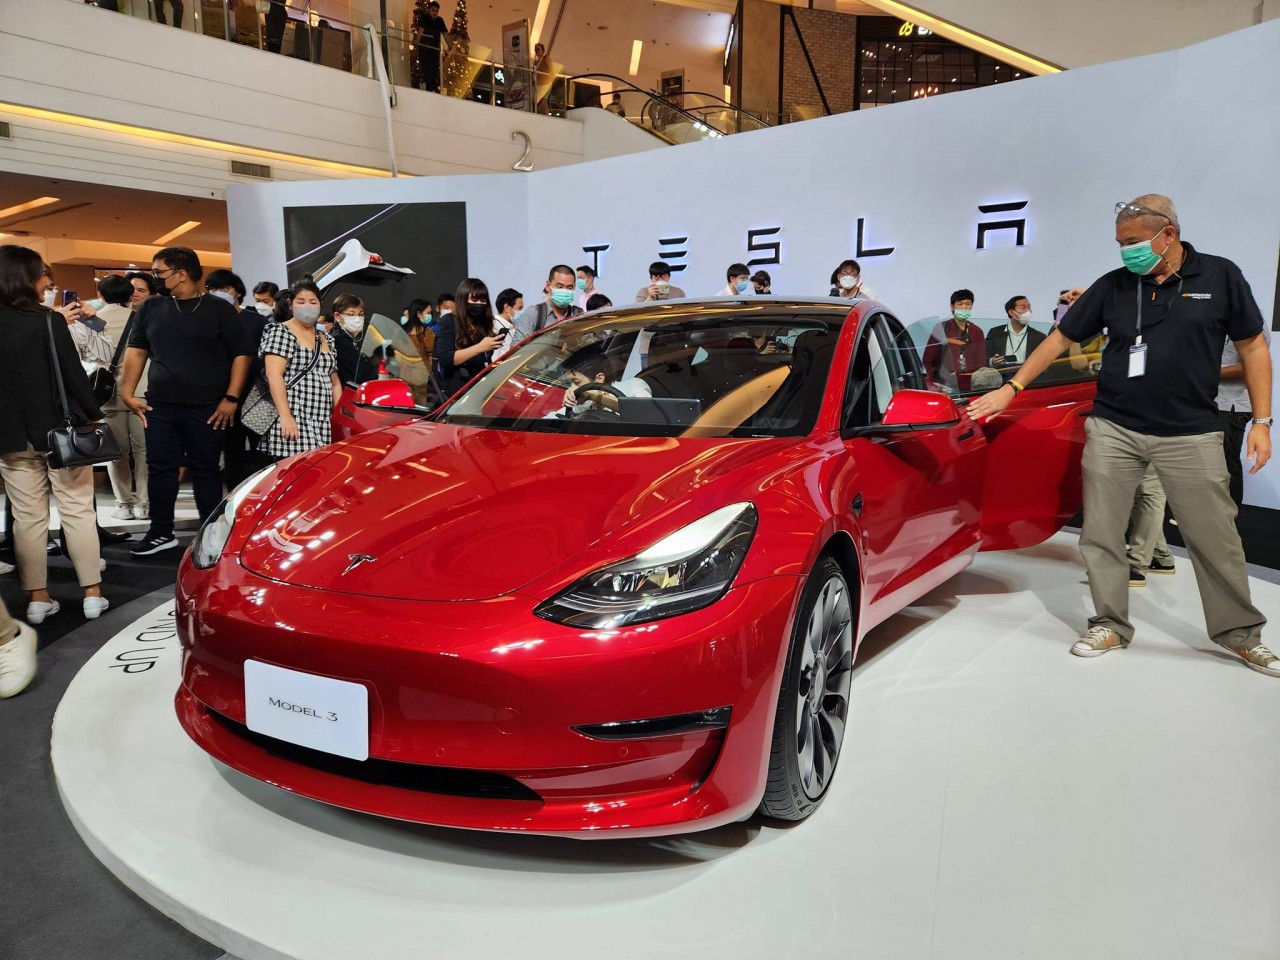 Tesla Model 3 chính thức được bán tại Thái Lan, liệu có về Việt Nam?